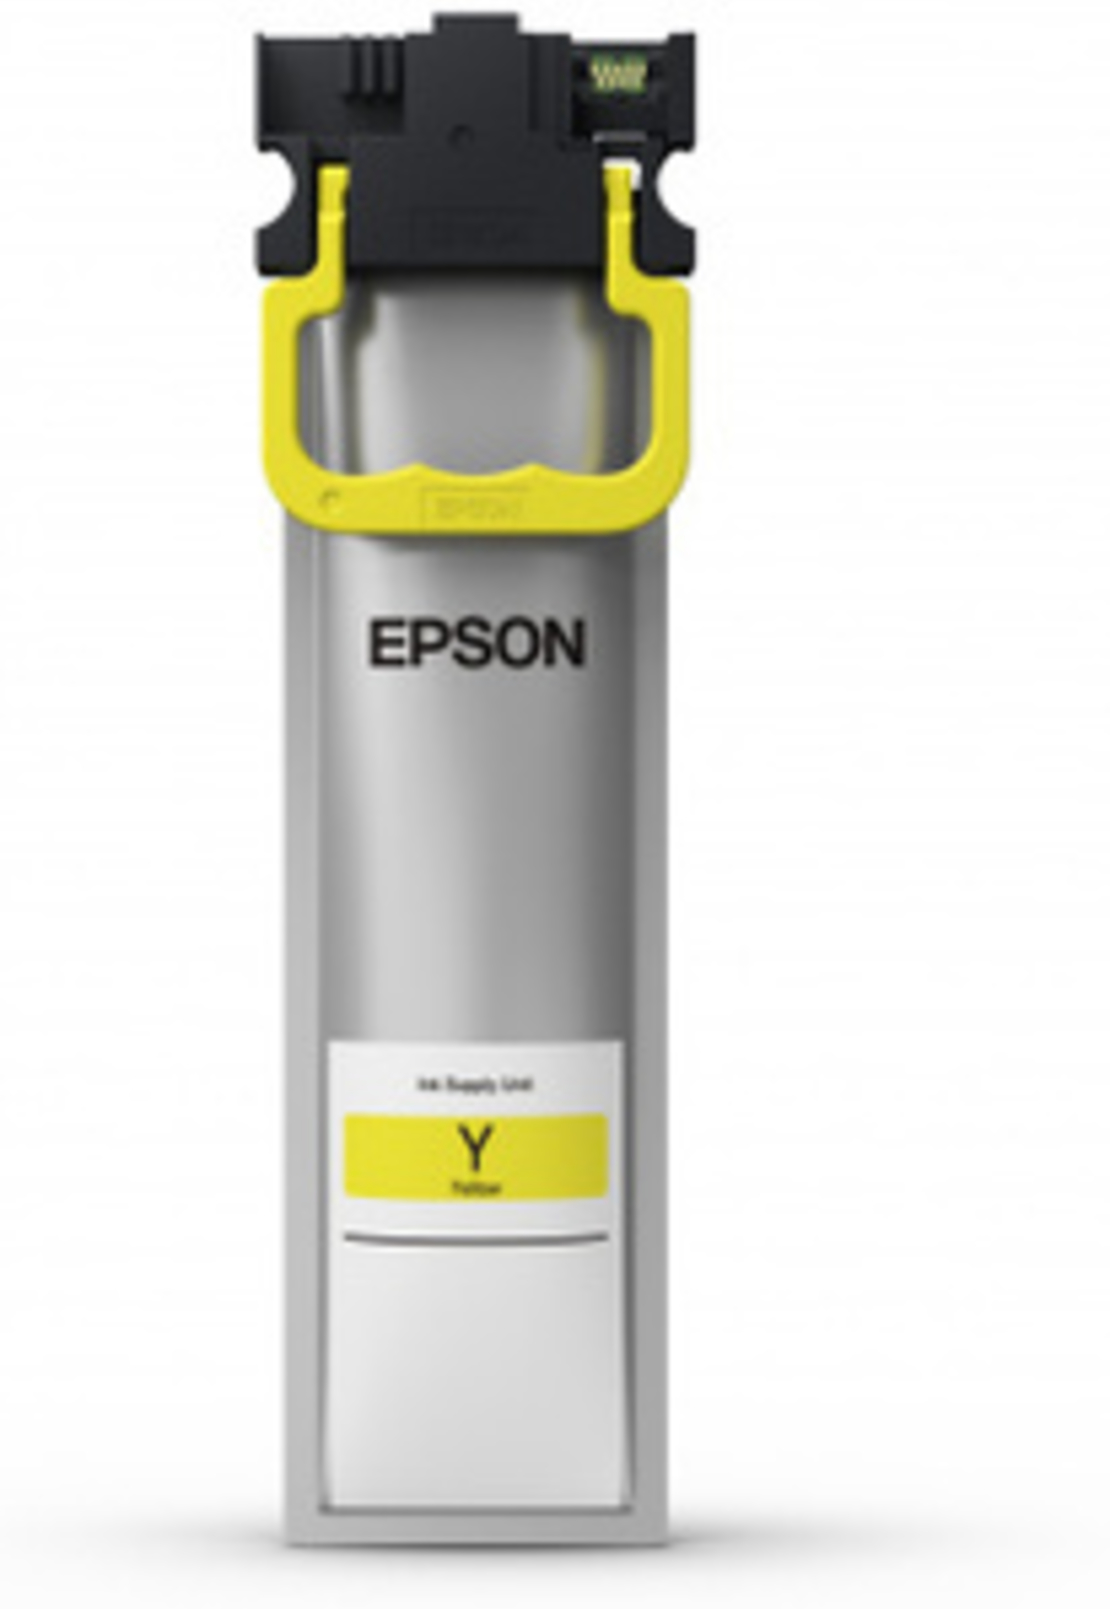 מיכל דיו צהוב מקורי אפסון Epson T9454 C13T945440